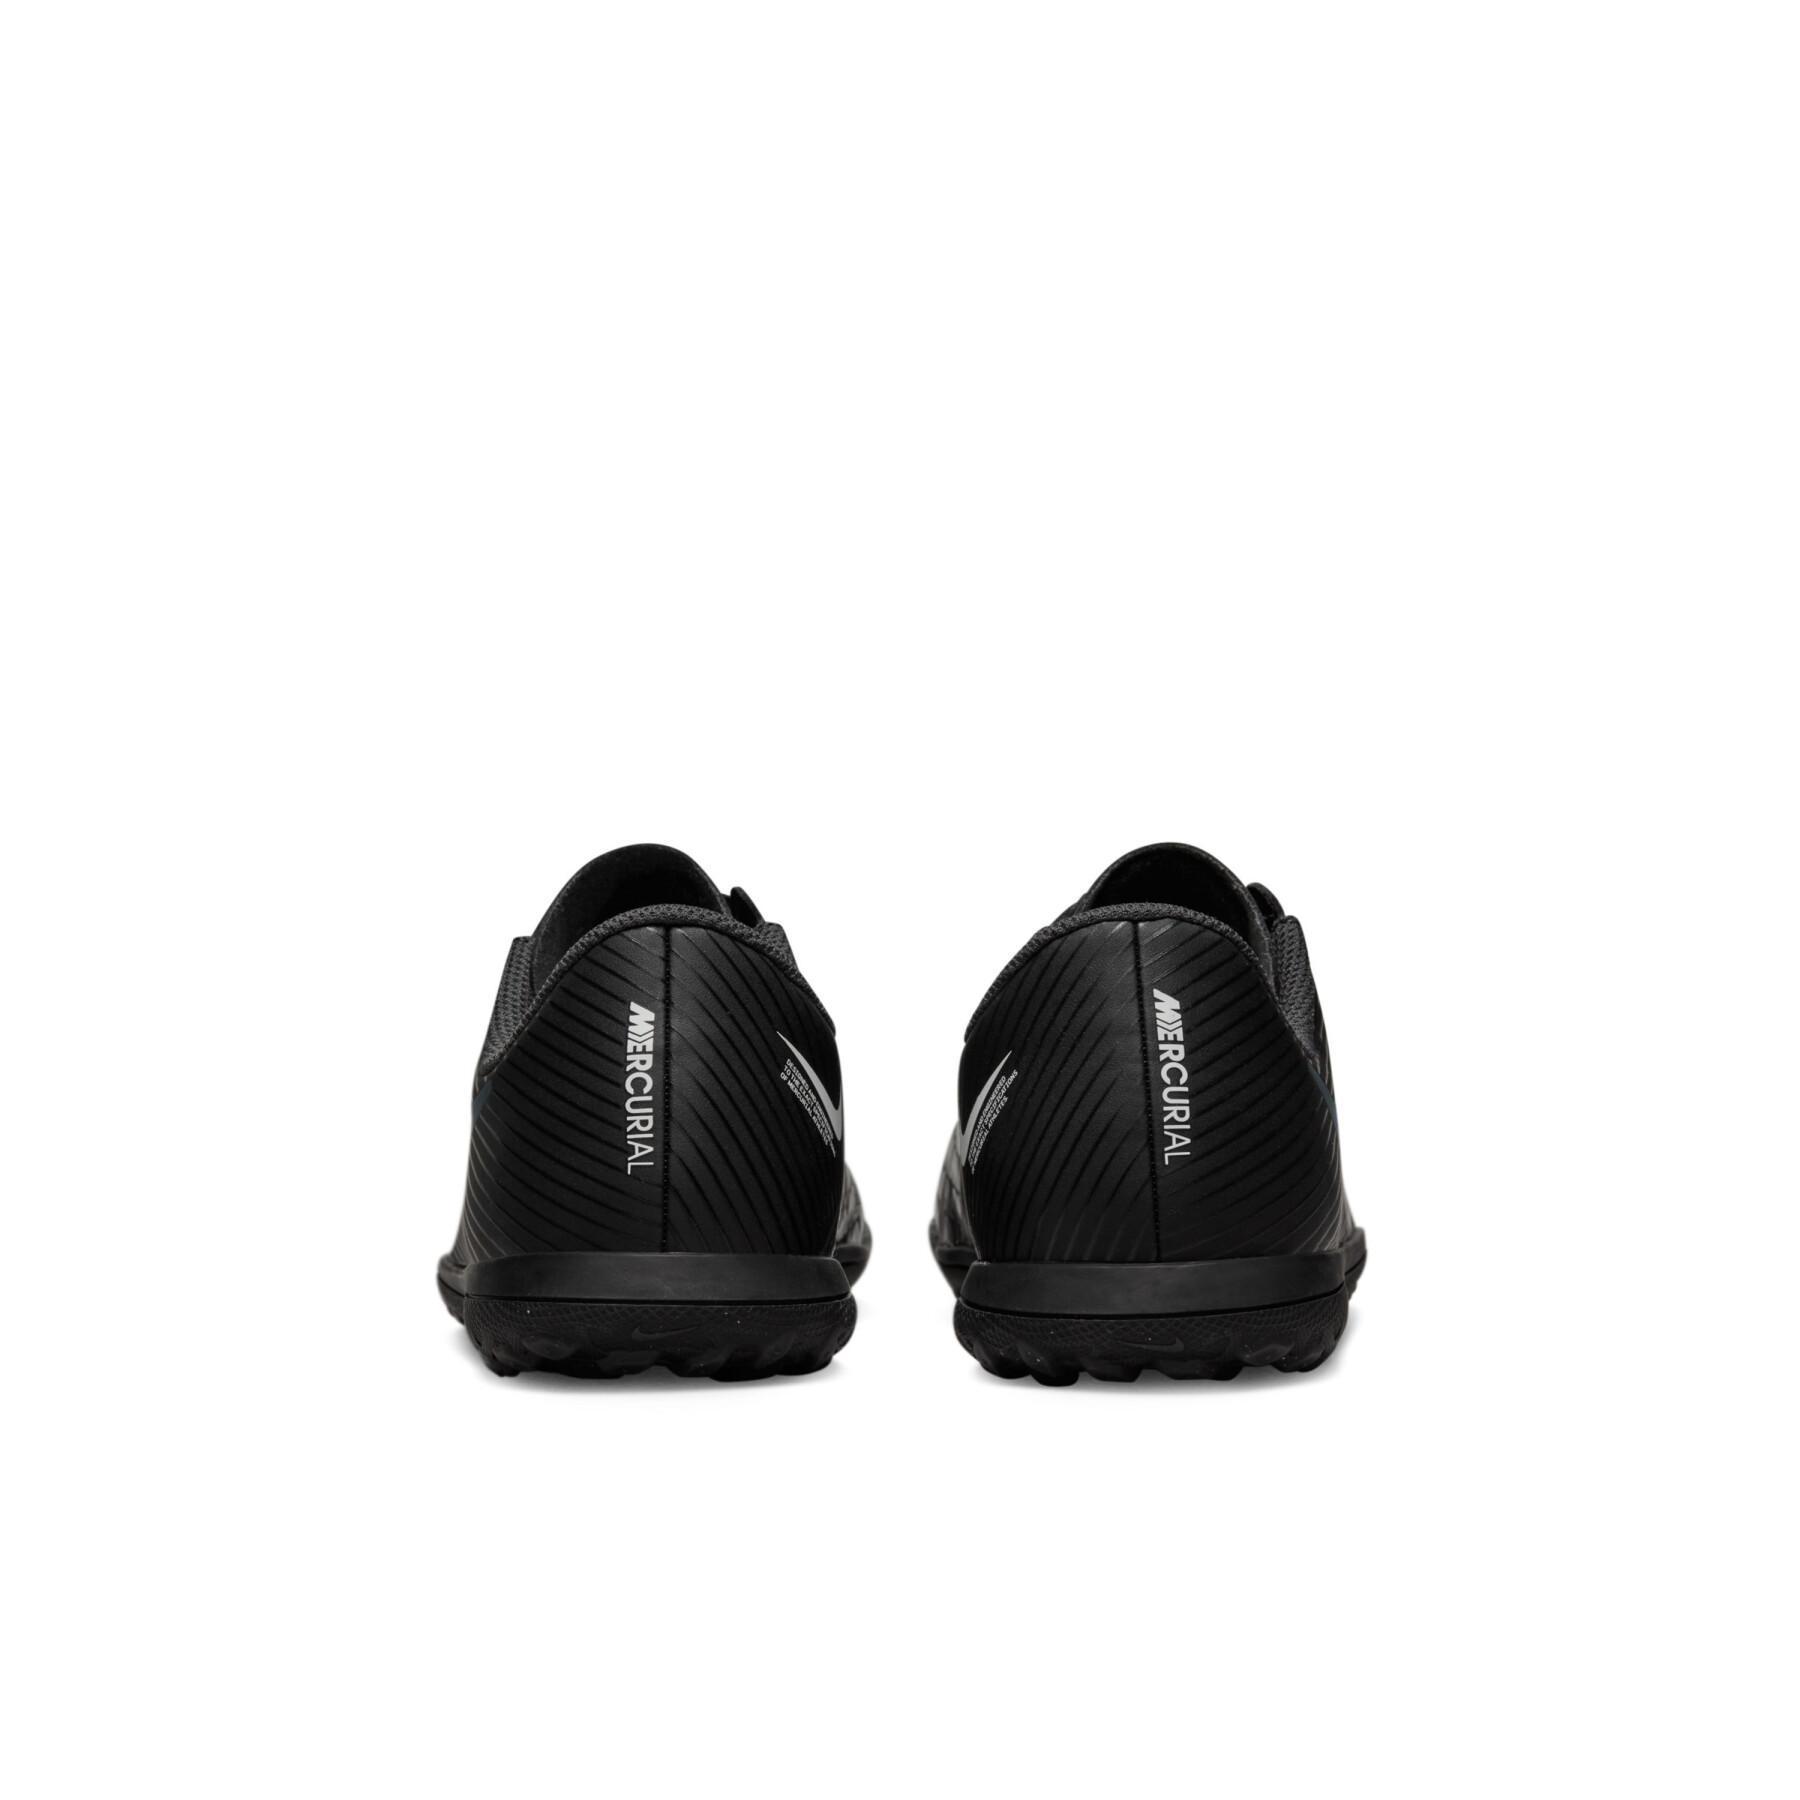 Sapatos de futebol para crianças Nike Mercurial Vapor 15 Club TF - Shadow Black Pack